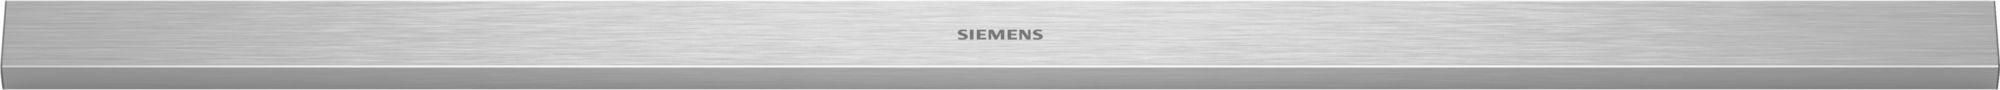 BSH Bosch Siemens 17005048 Griffleiste - Handle-strip